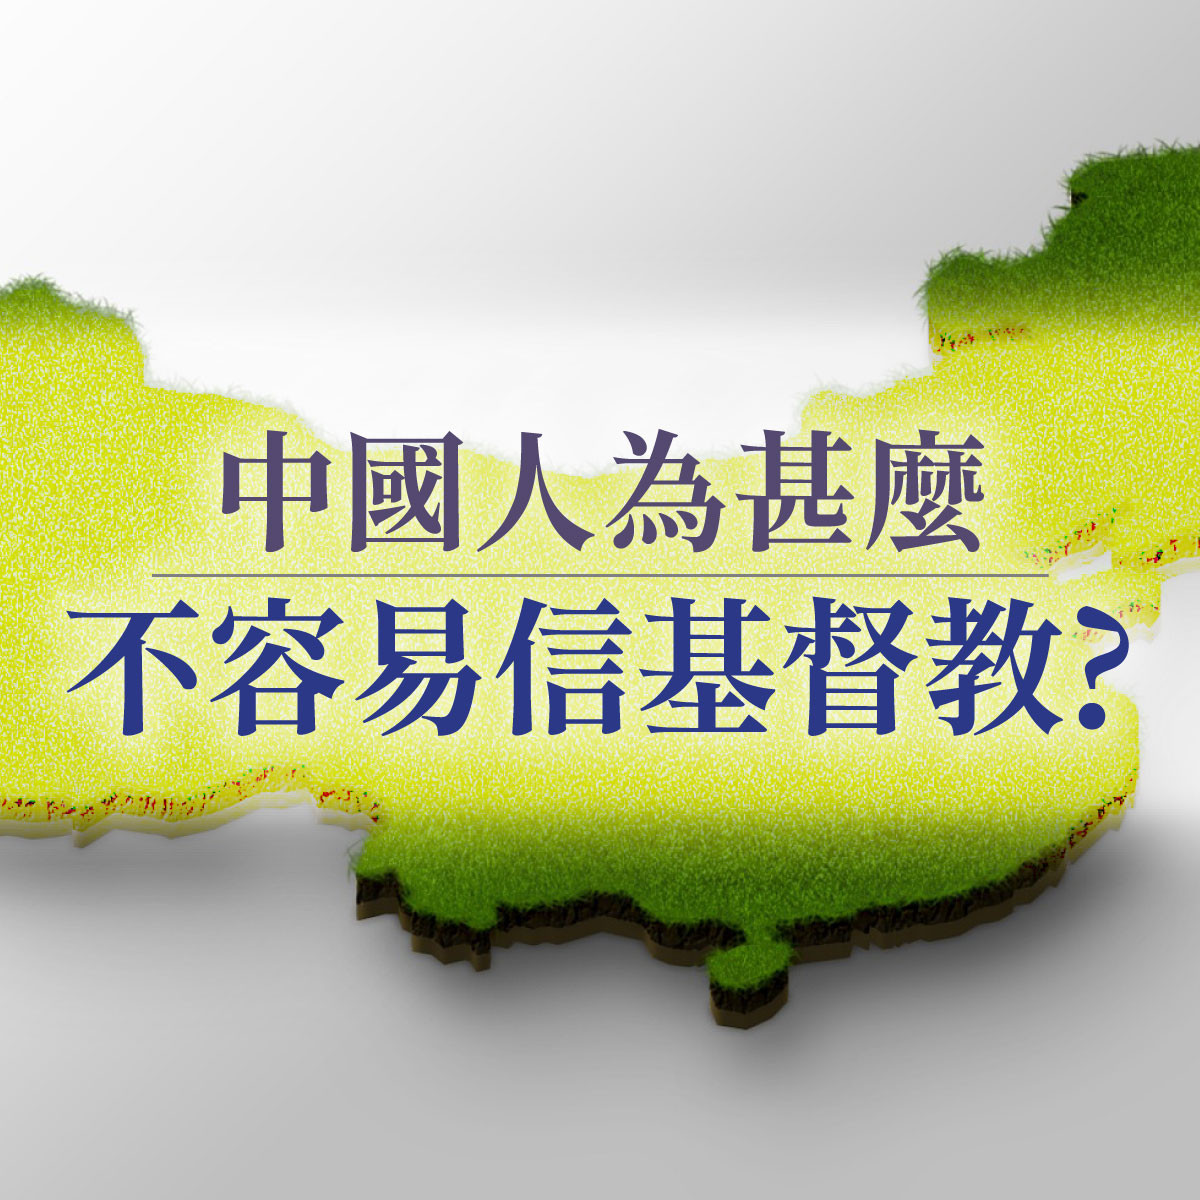 中國人為什麼不容易信基督教 - 第五講 - 文化問題封面圖